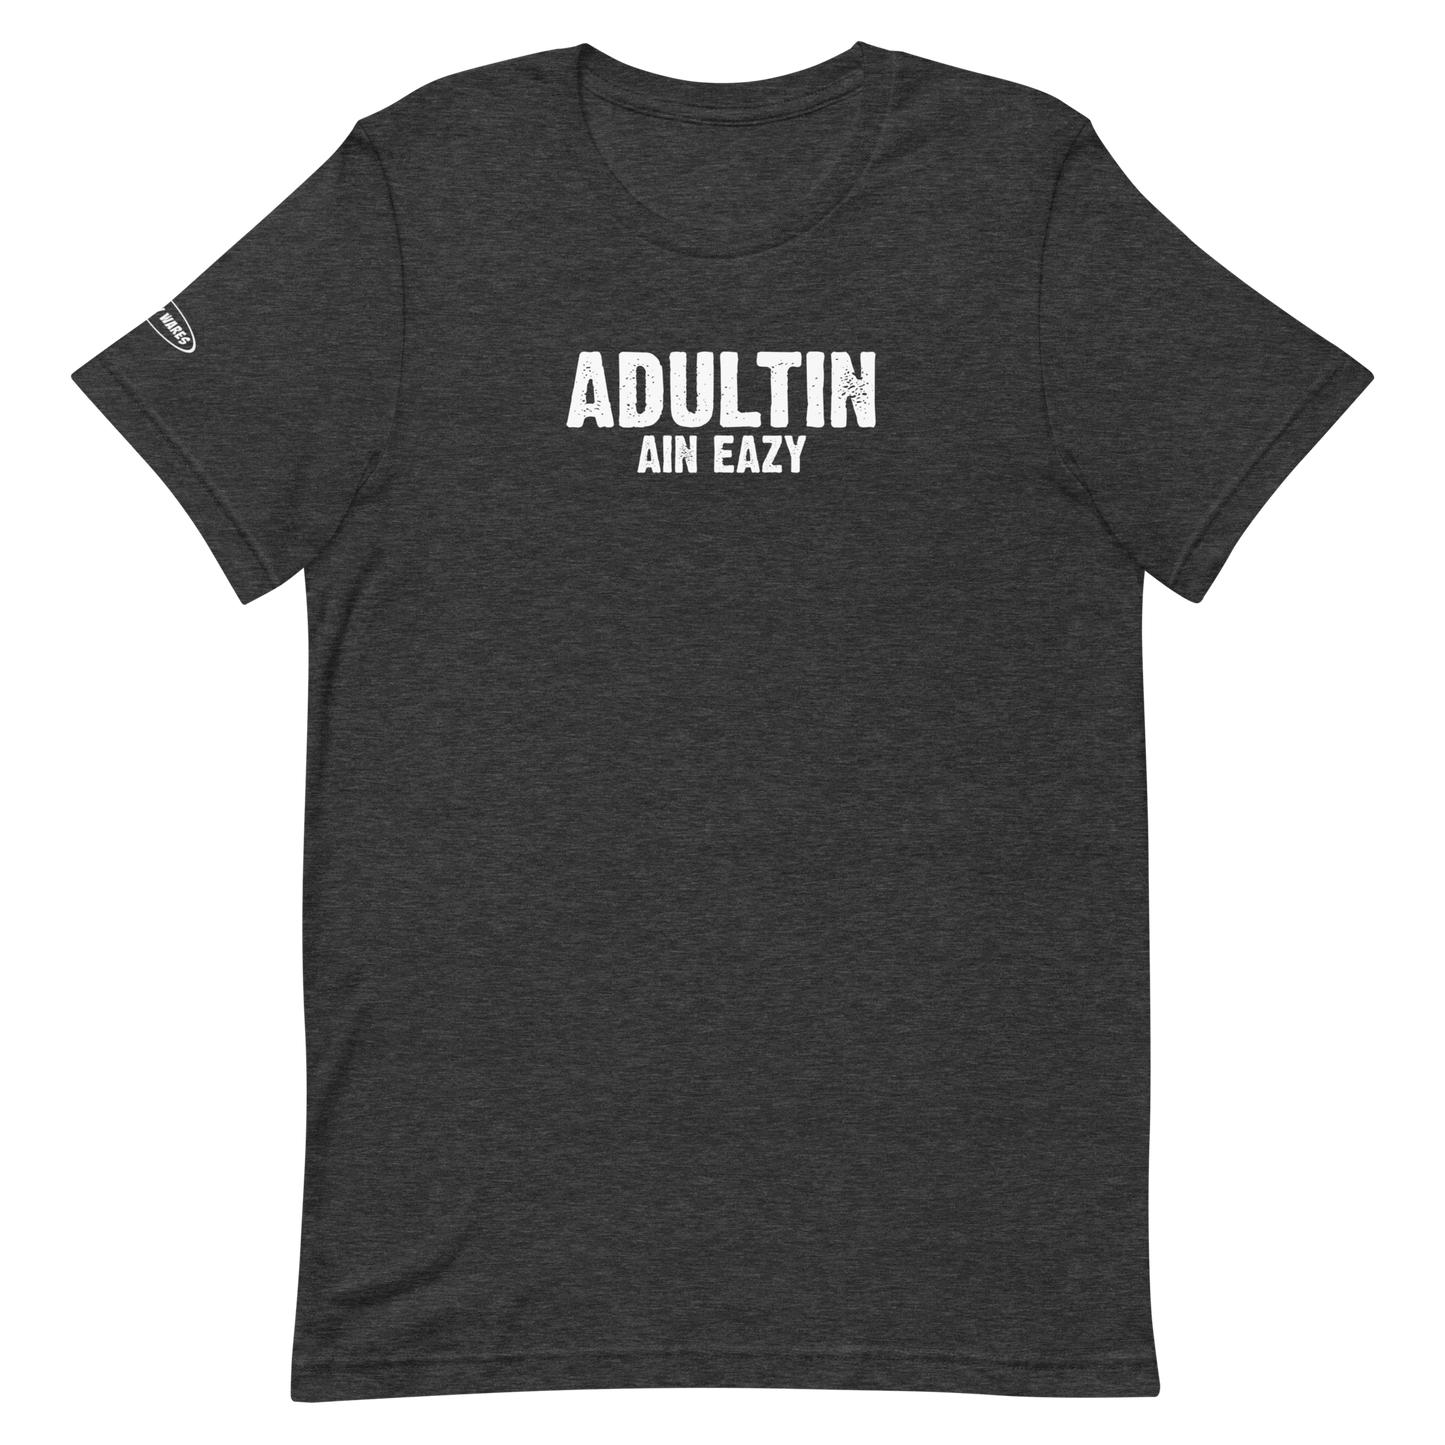 Unisex - Adultin Ain Eazy - Funny T-Shirt